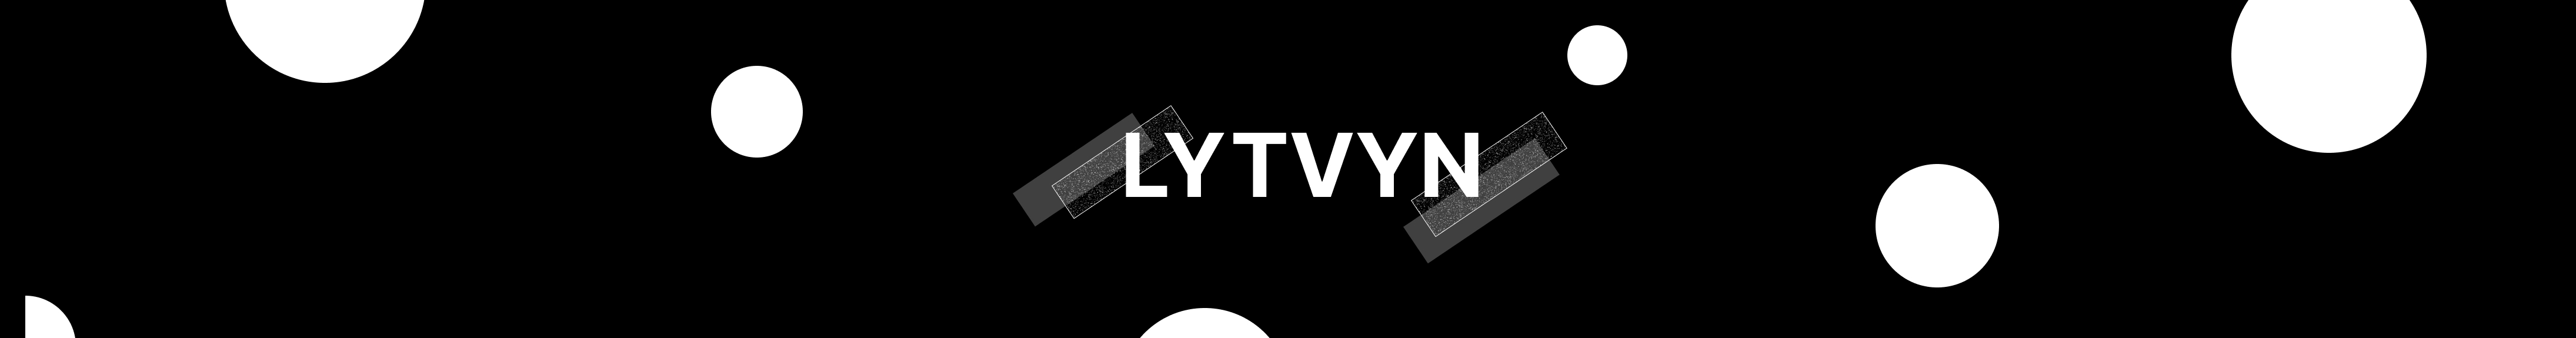 Valeriya Lytvyn のプロファイルバナー